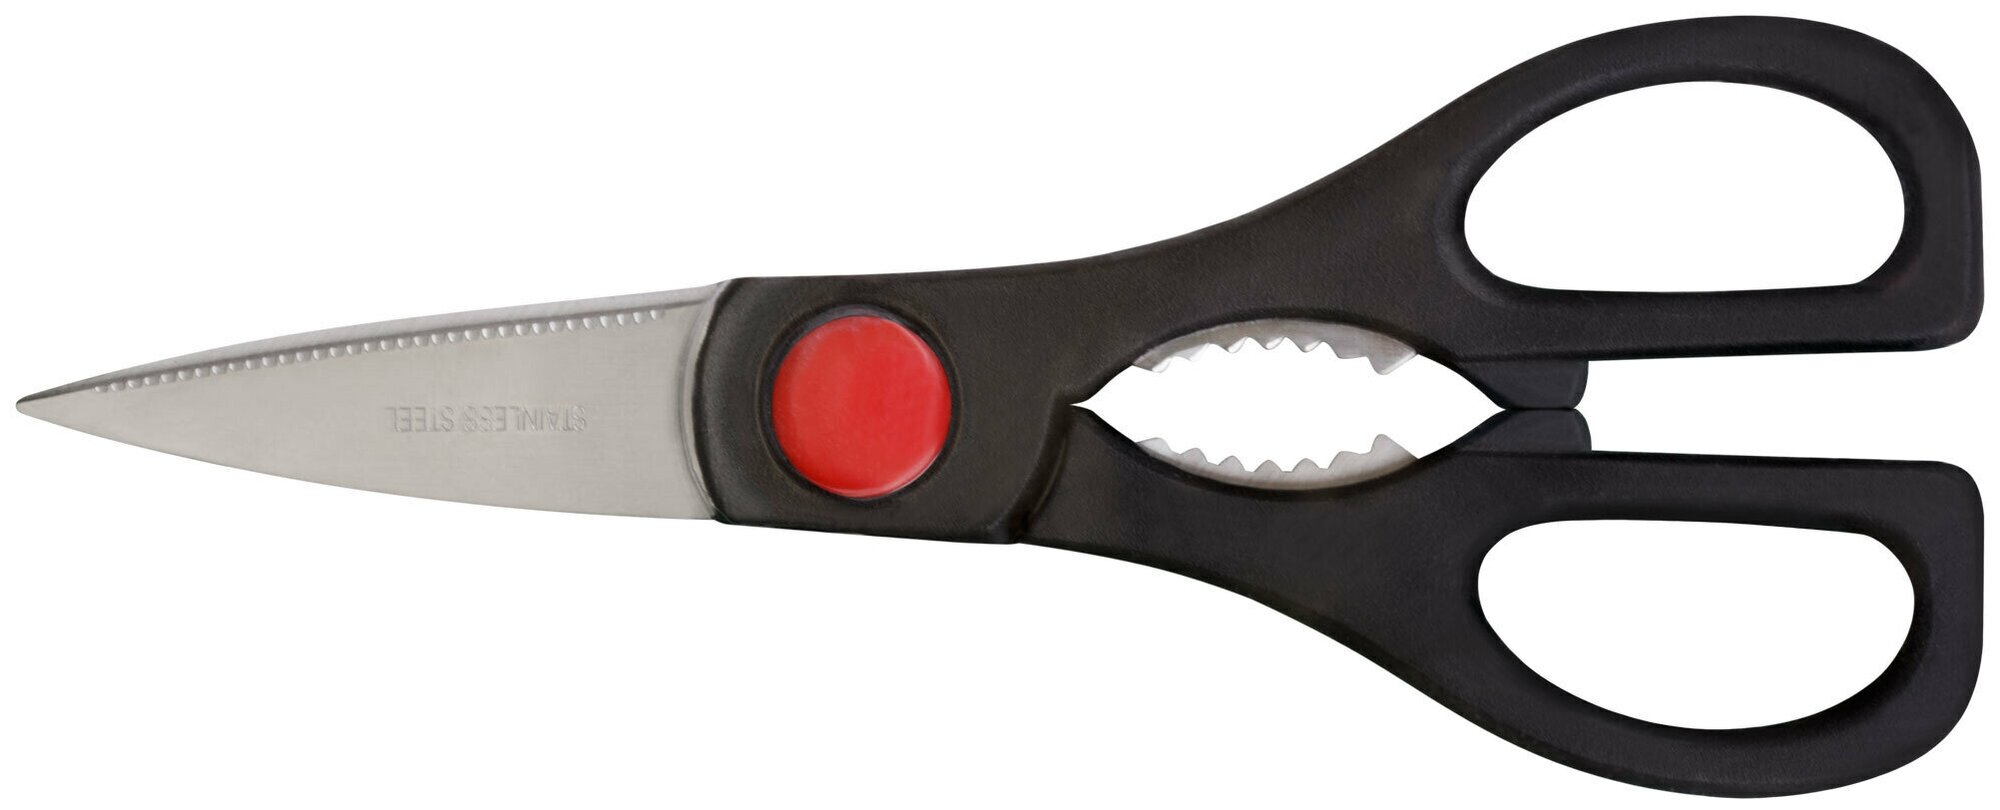 Ножницы технические нержавеющие, толщина лезвия 1,8 мм, 205 мм 67320